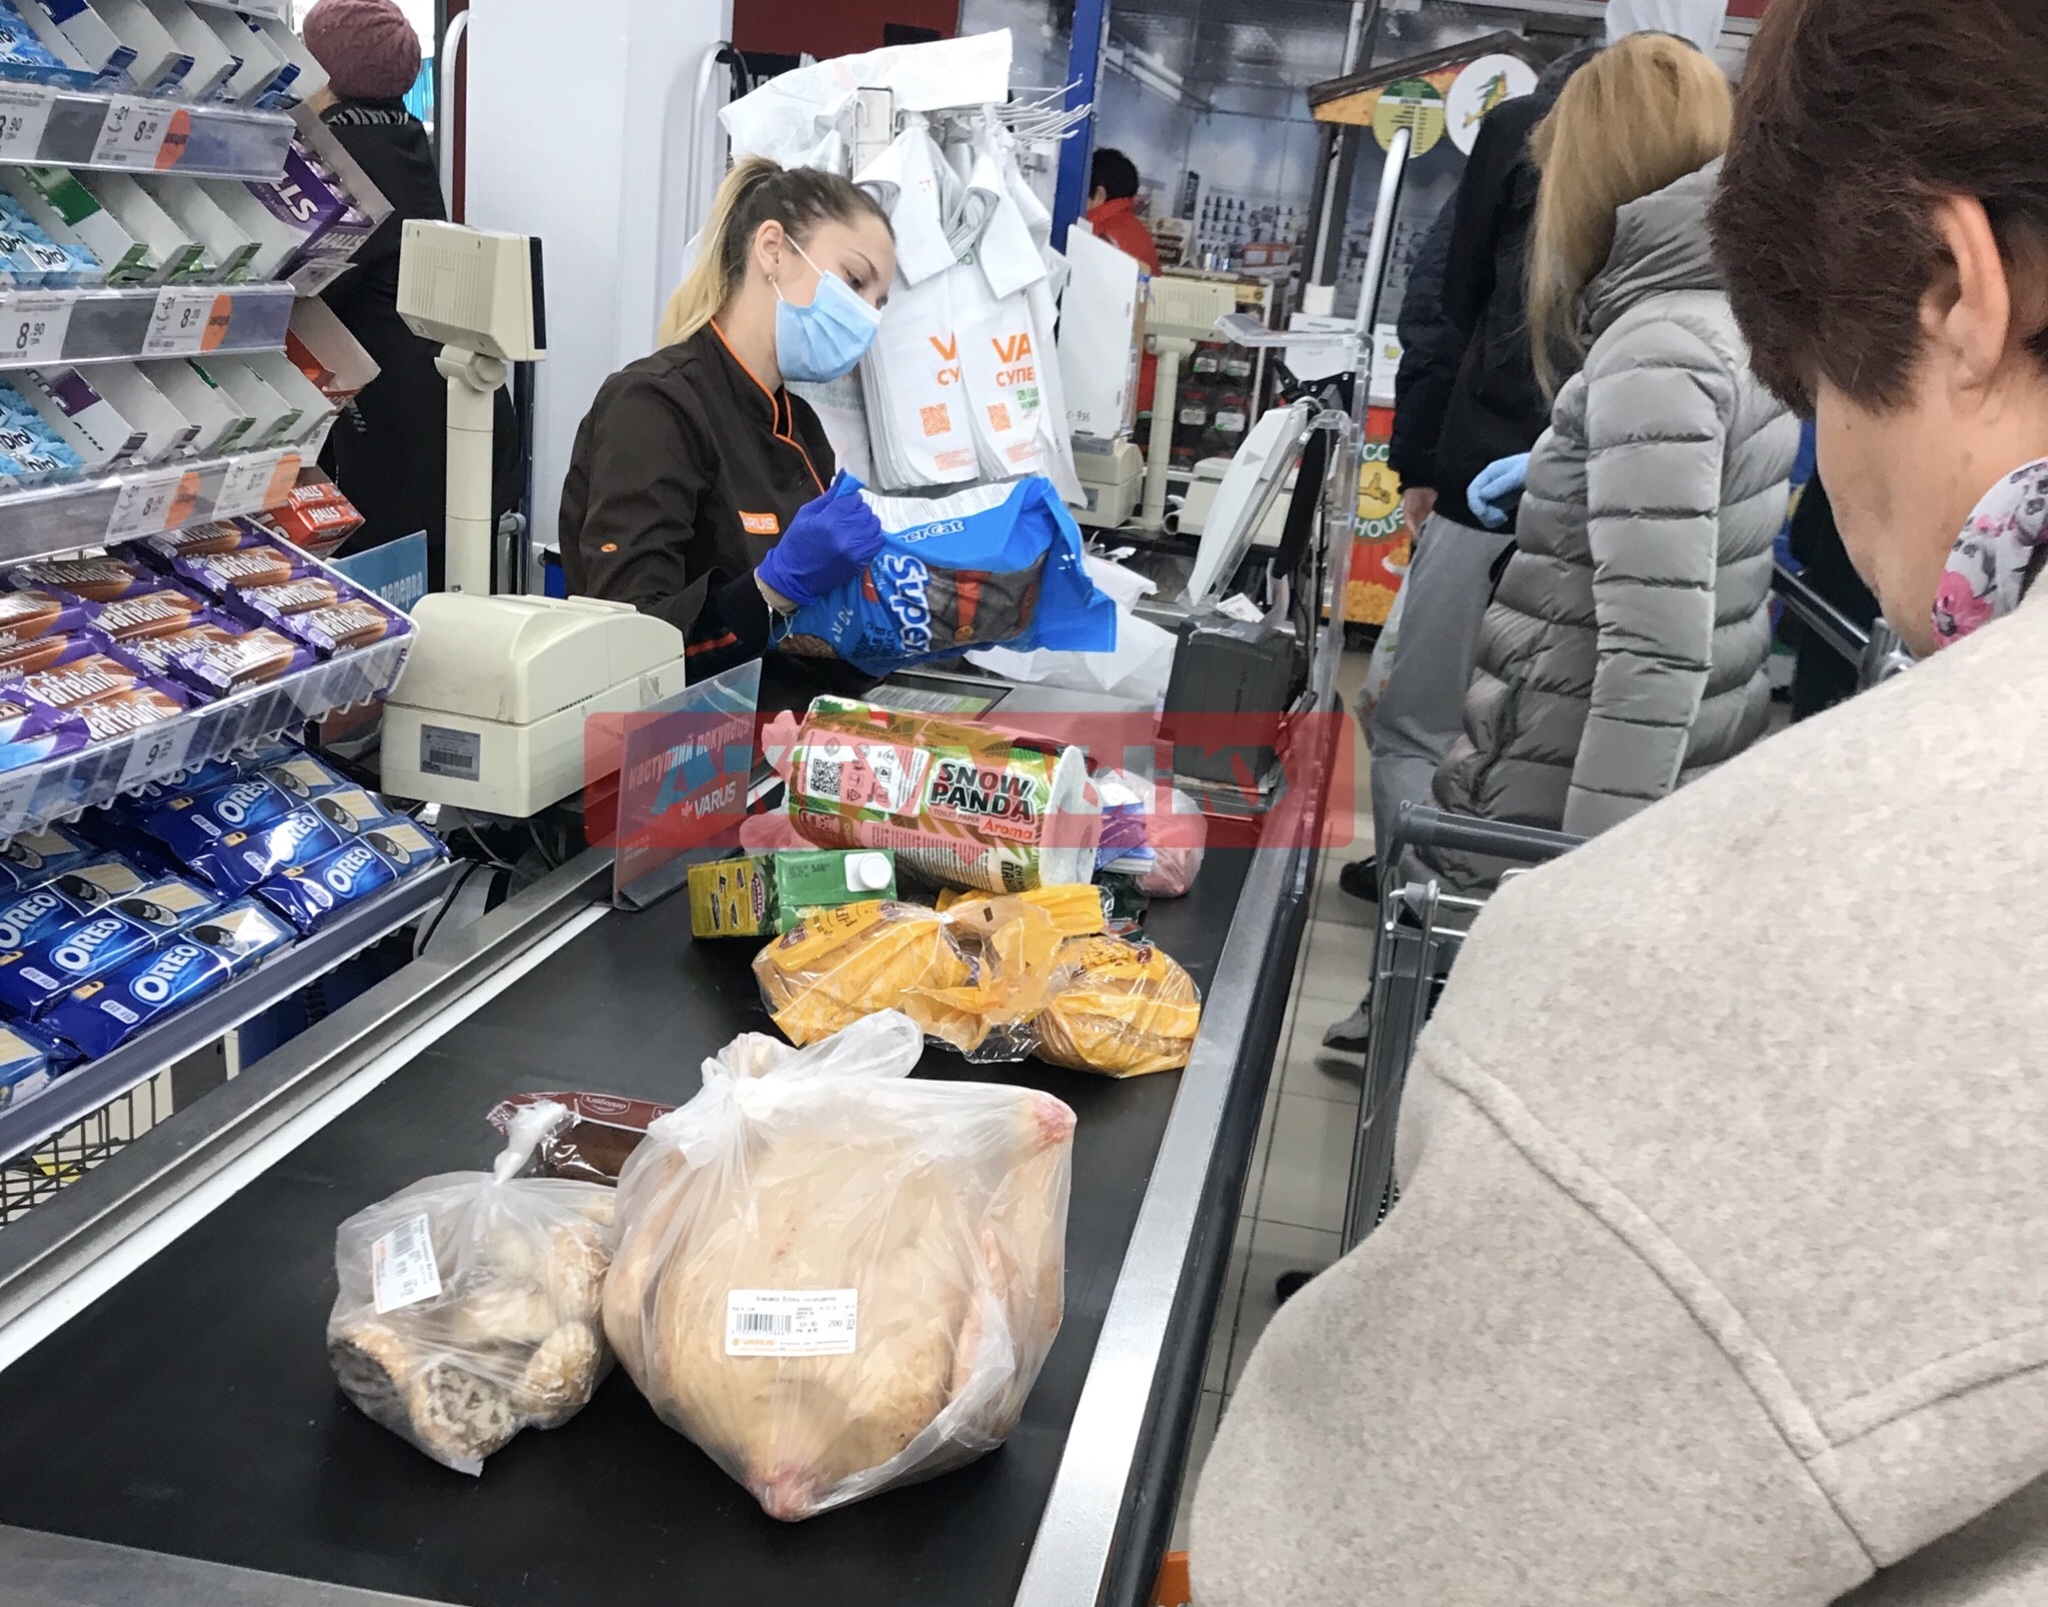 Еды хватит всем: представители супермаркетов “Ашан”, “Сильпо”, “Метро” в Запорожье рассказали о запасах продовольствия на период карантина